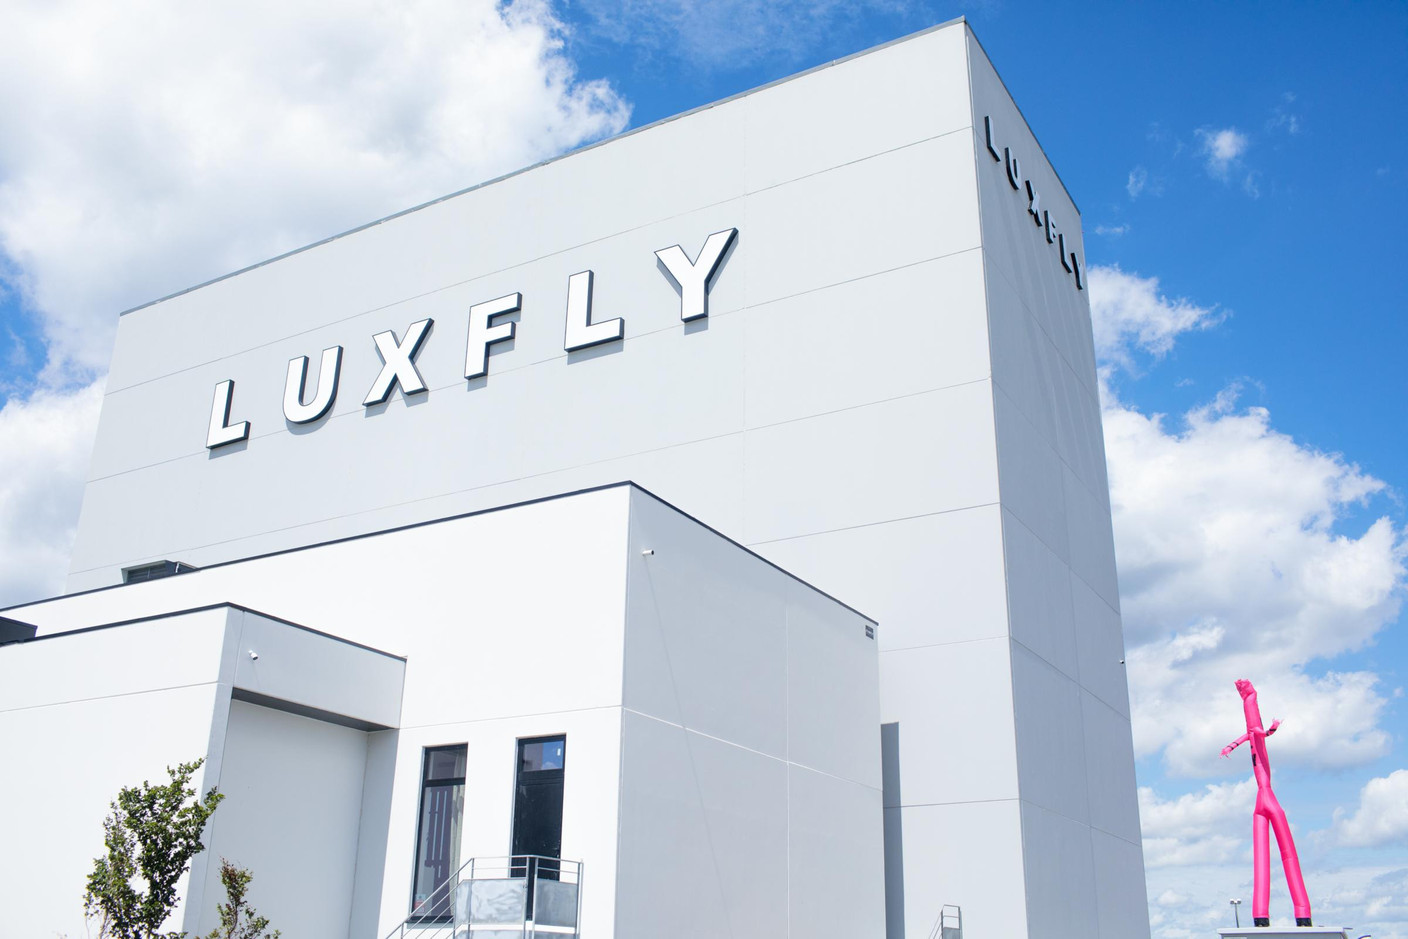 En s’installant à Sterpenich, Luxfly Skydive a choisi une position stratégique, proche de la France et du Luxembourg, dans la zone commerciale près d’Ikea. (Photo: Matic Zorman / Maison Moderne)